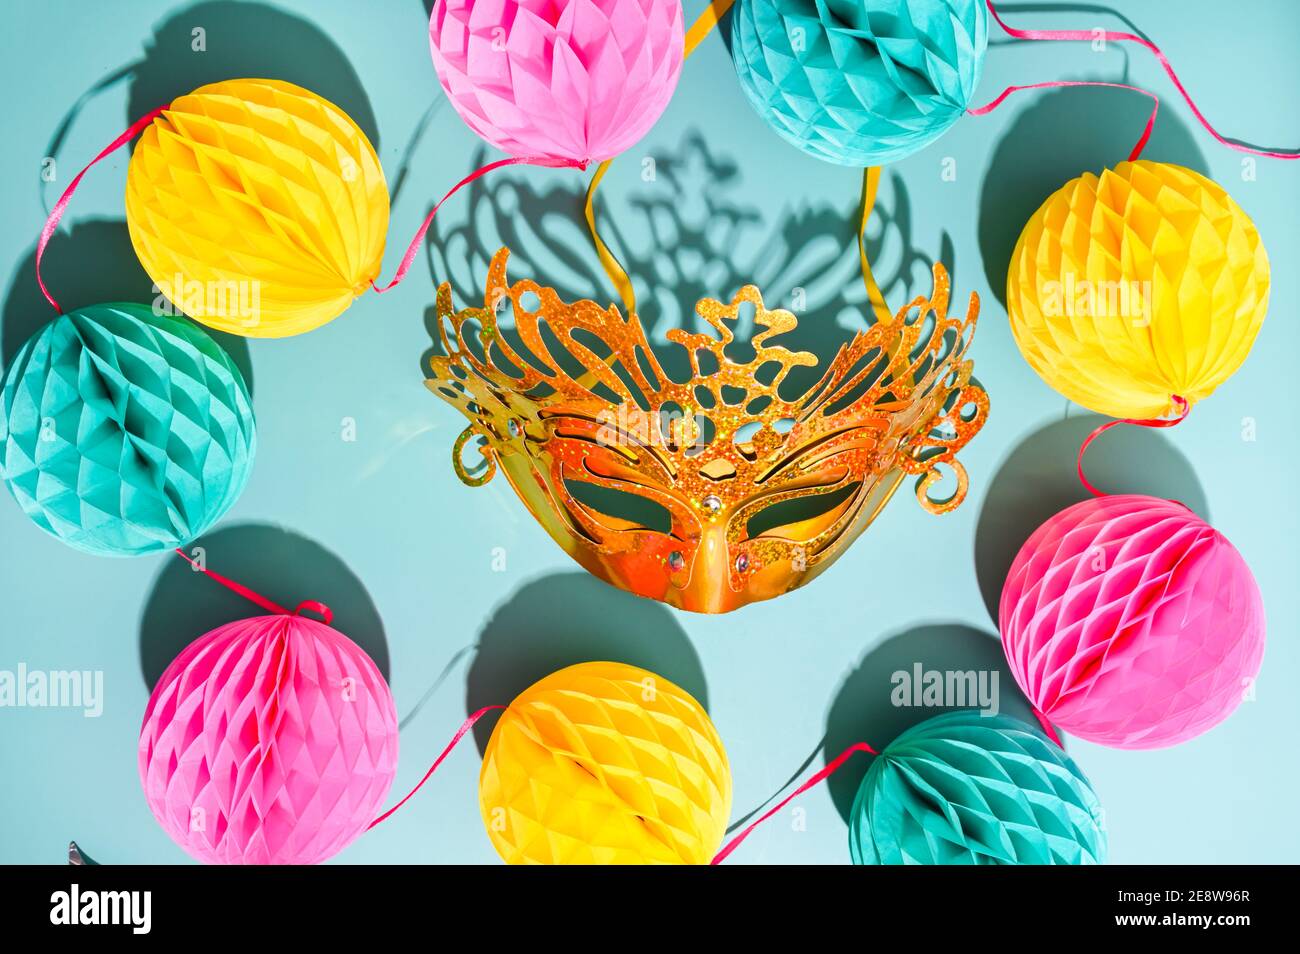 Maschera di Carnevale e confetti su sfondo blu. Il concetto di un tradizionale carnevale veneziano in italia 2021. Colori chiari e brillanti Foto Stock